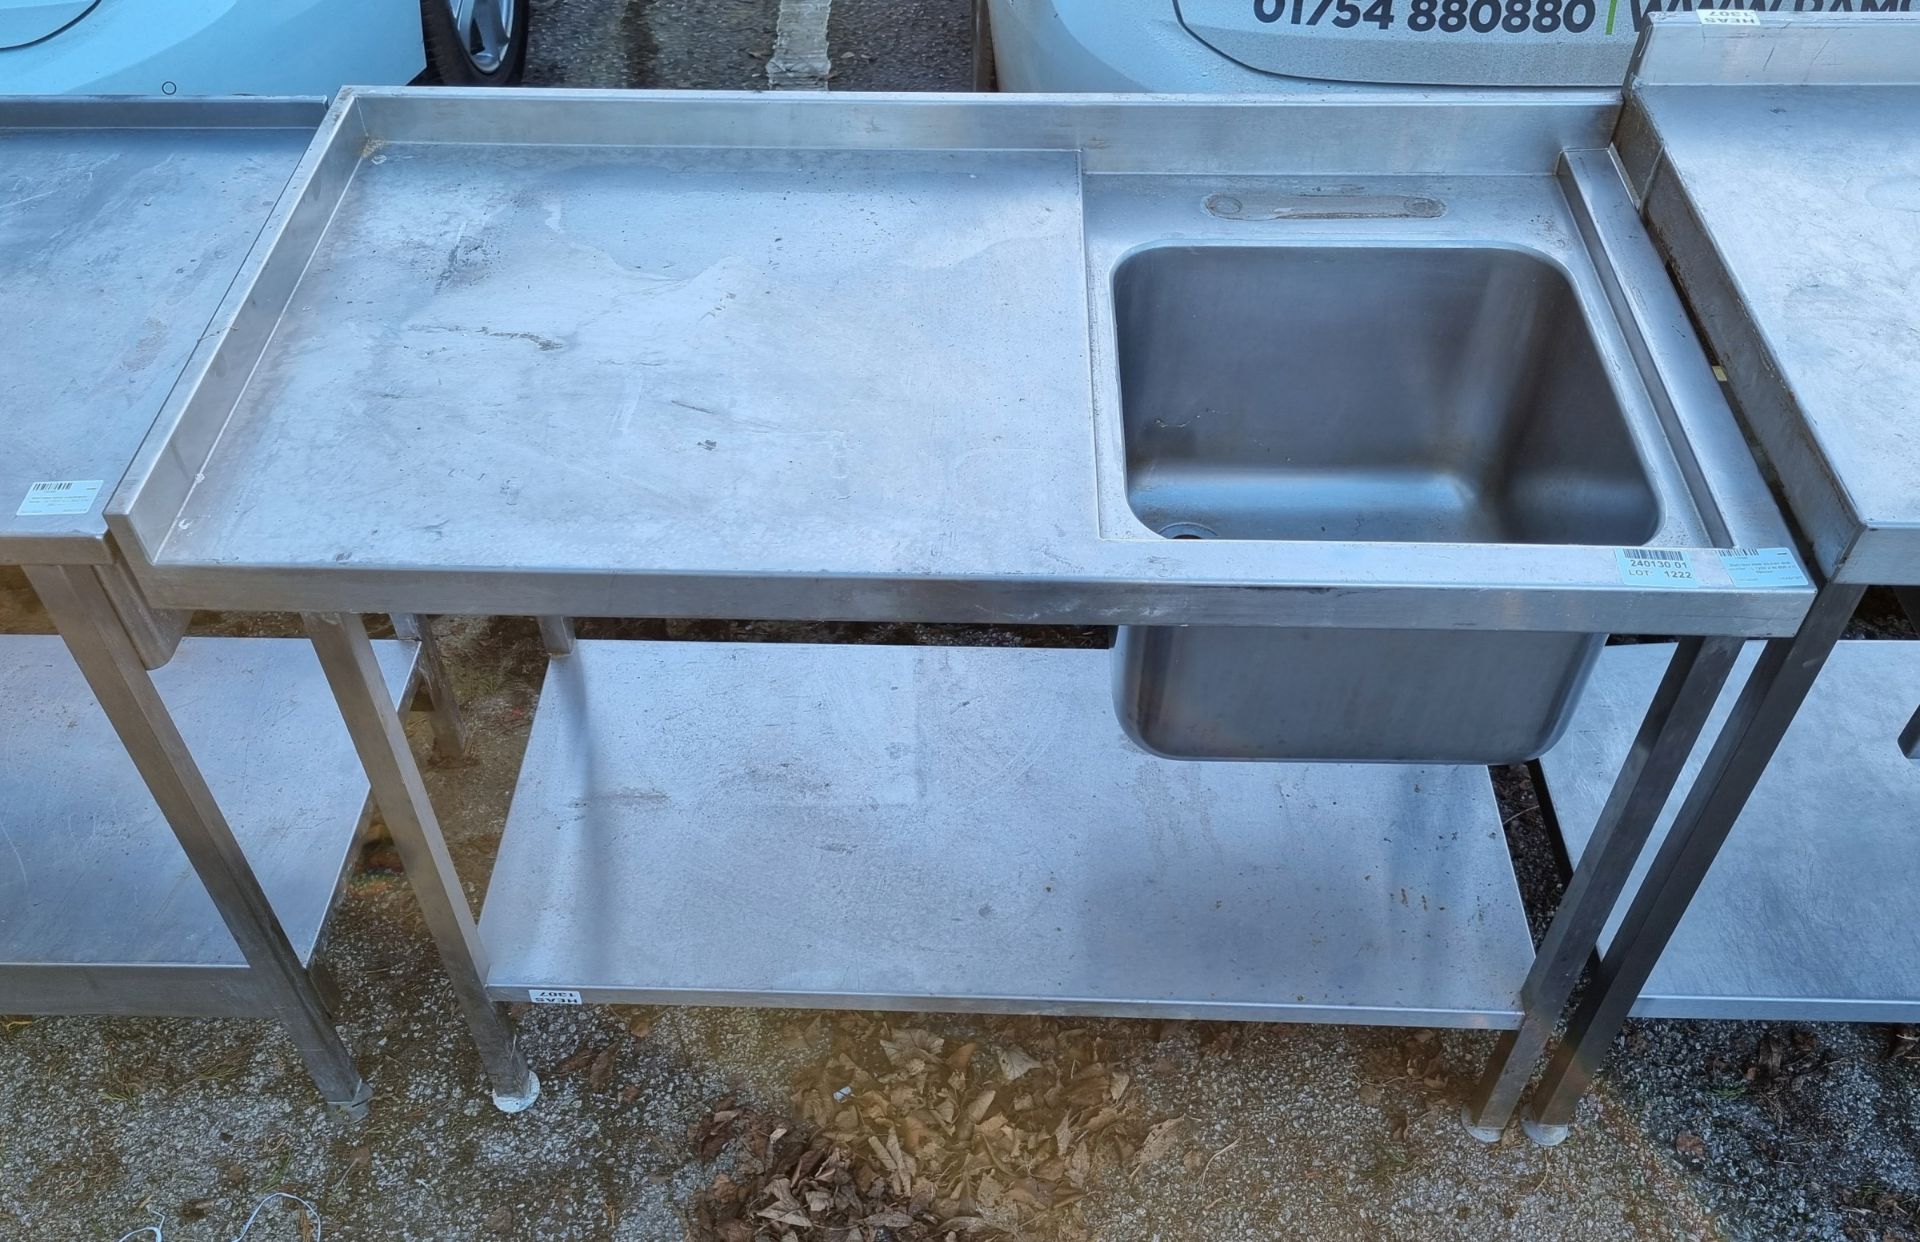 Stainless steel kitchen sink counter - L 1200 x W 600 x H 890mm - Bild 2 aus 3